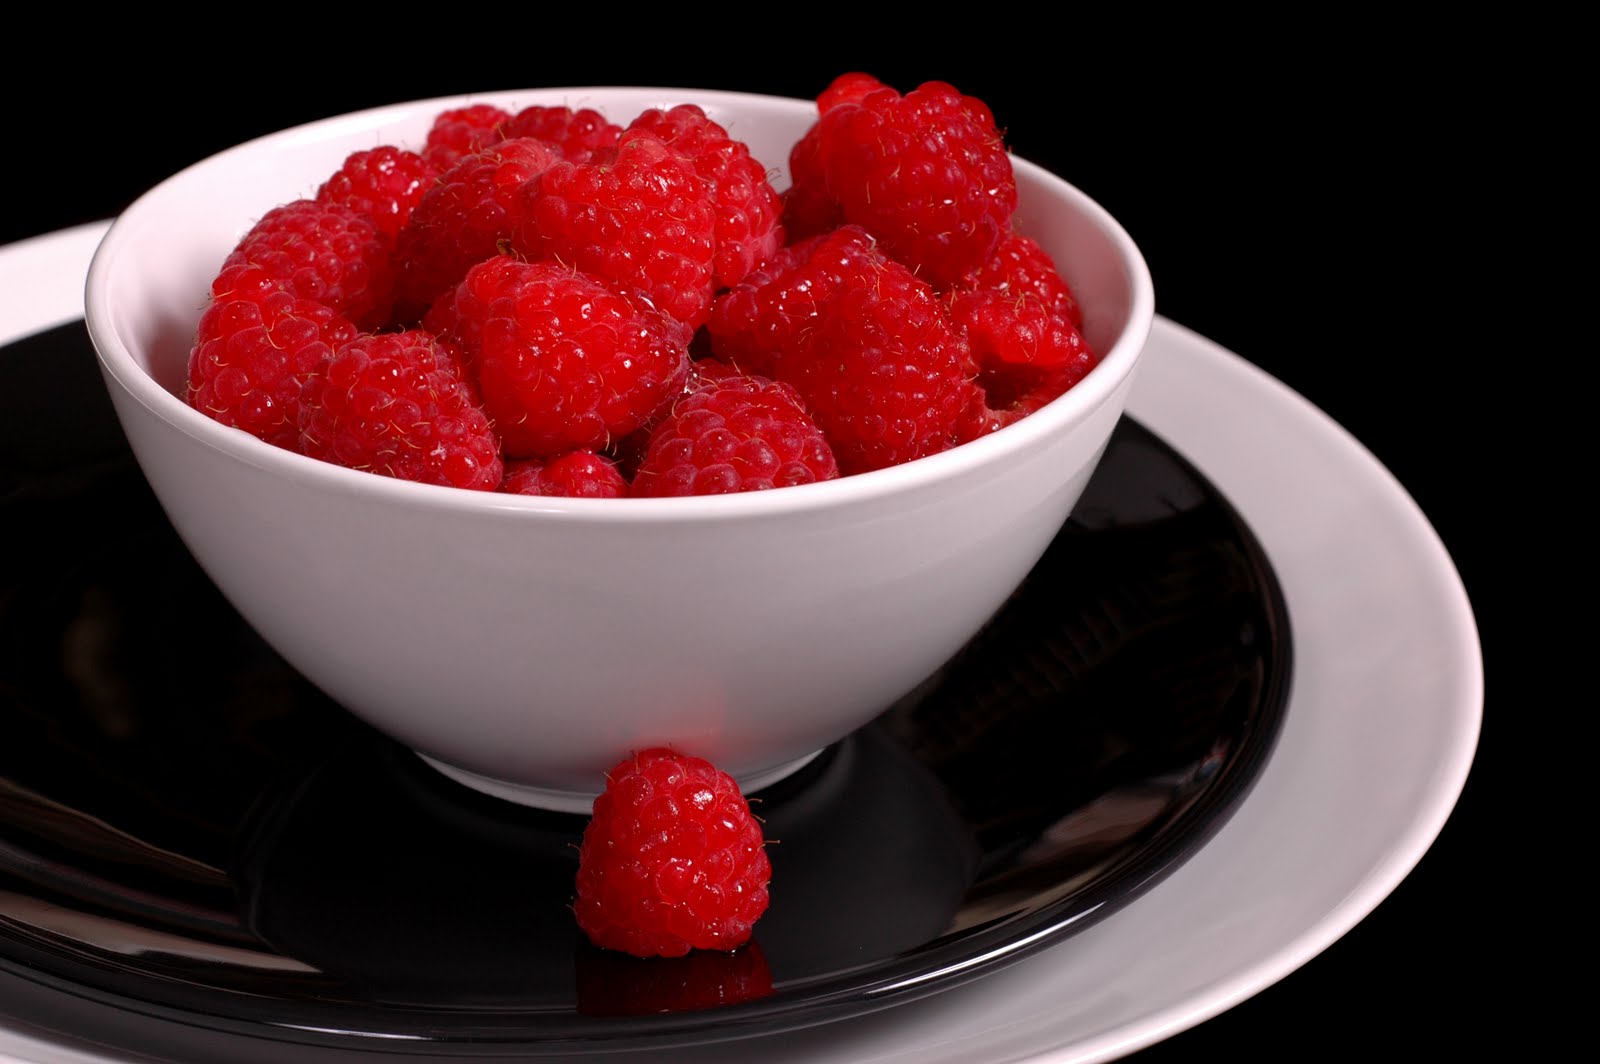 Bowl Of Raspberries